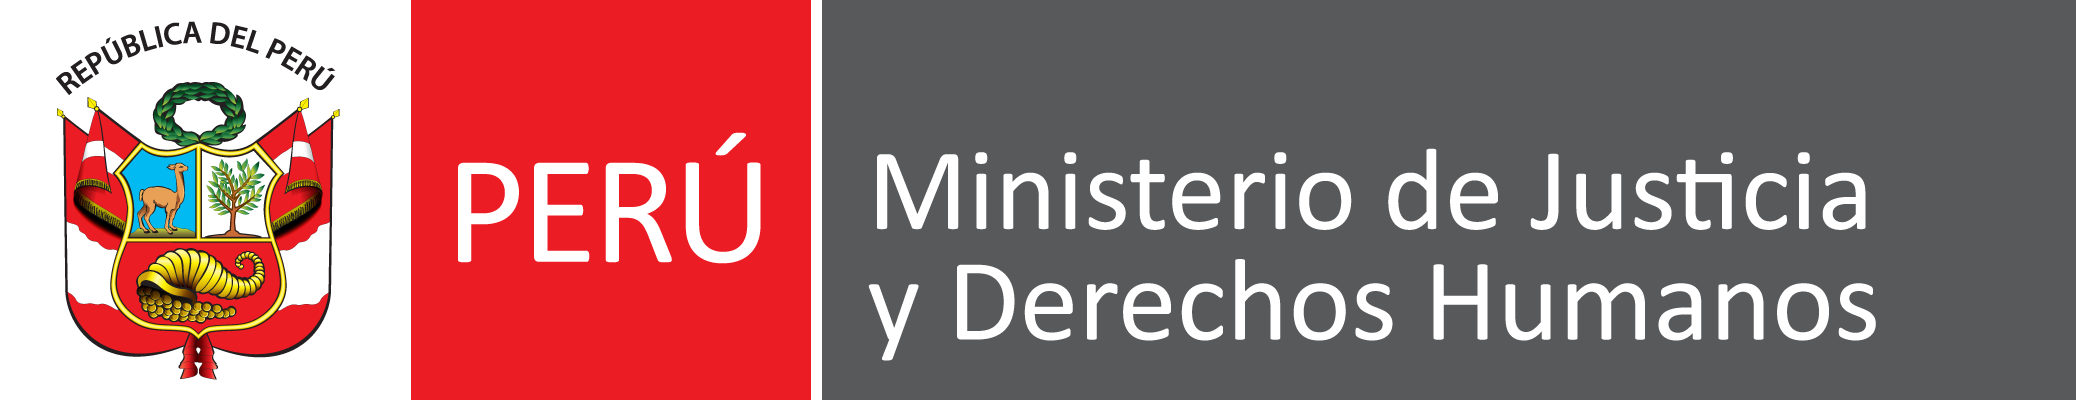 PCM-Justicia.png Español: Colección Ministerios de la República del Perú Date 29 December 2017 Source Own work Author CanalesQuintanilla